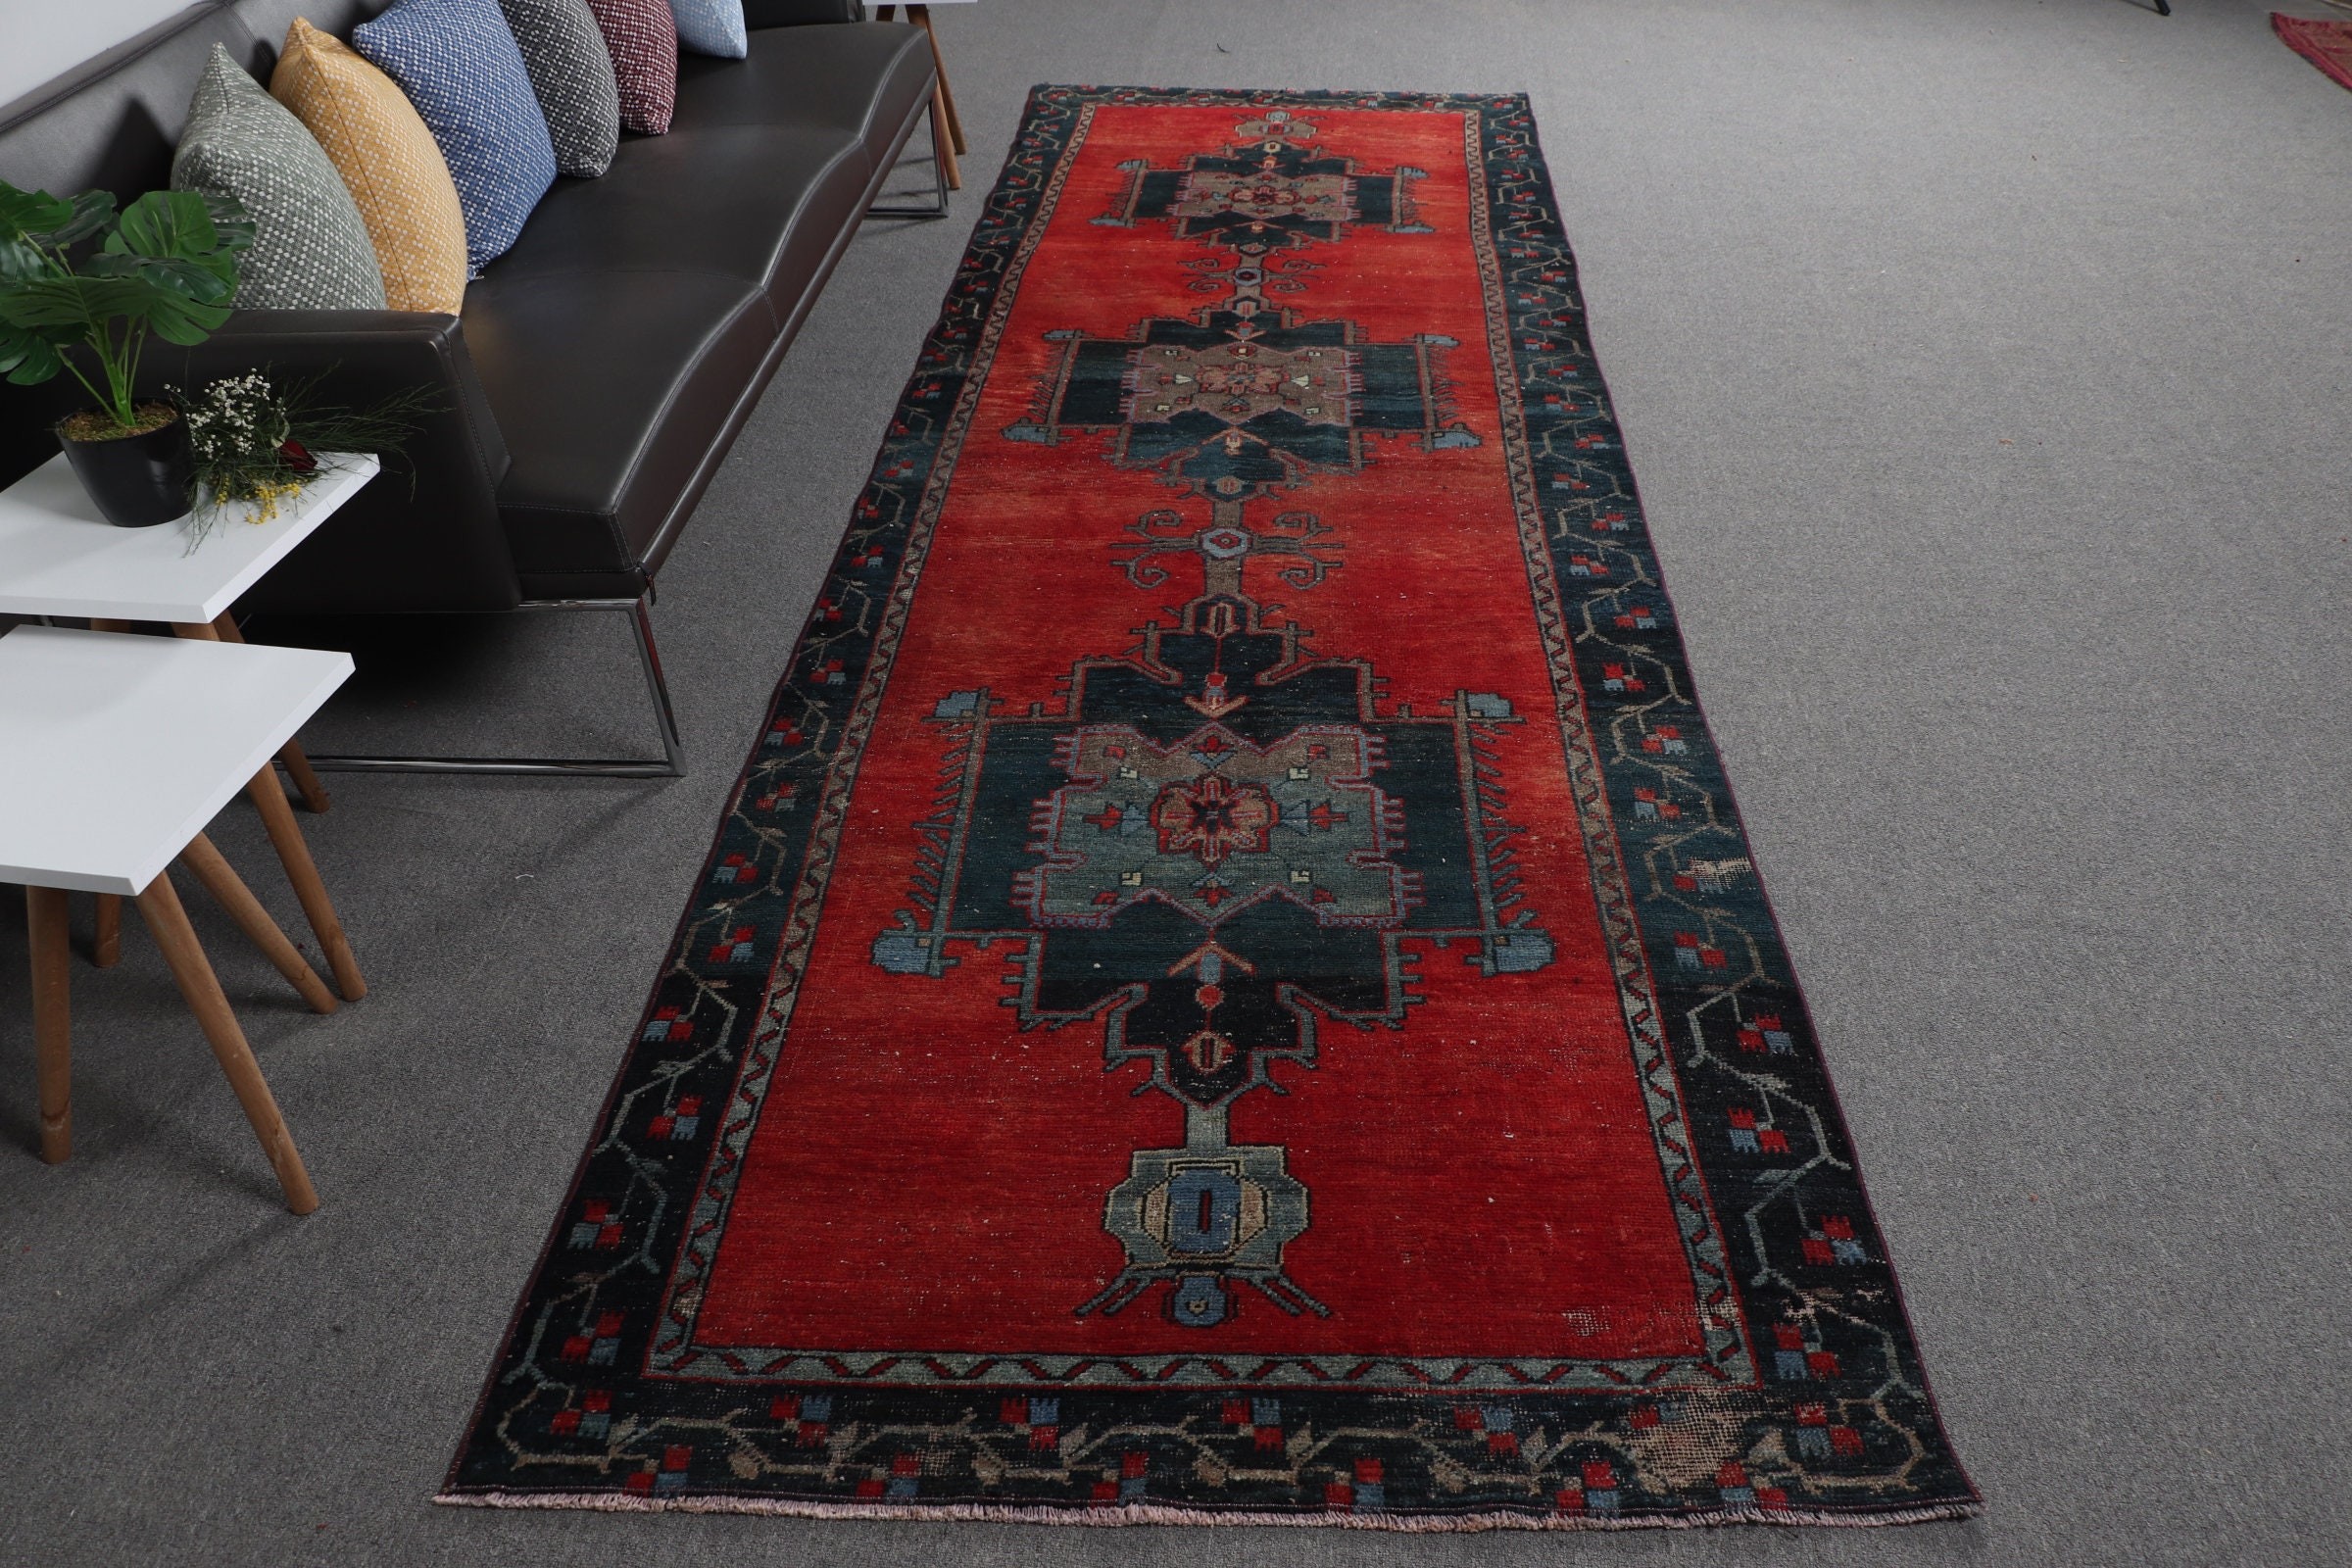 Hallway Rug, Kitchen Rug, Handmade Rug, Turkish Rug, Corridor Rugs, Anatolian Rugs, Vintage Rug, Red  3.9x12.5 ft Runner Rug